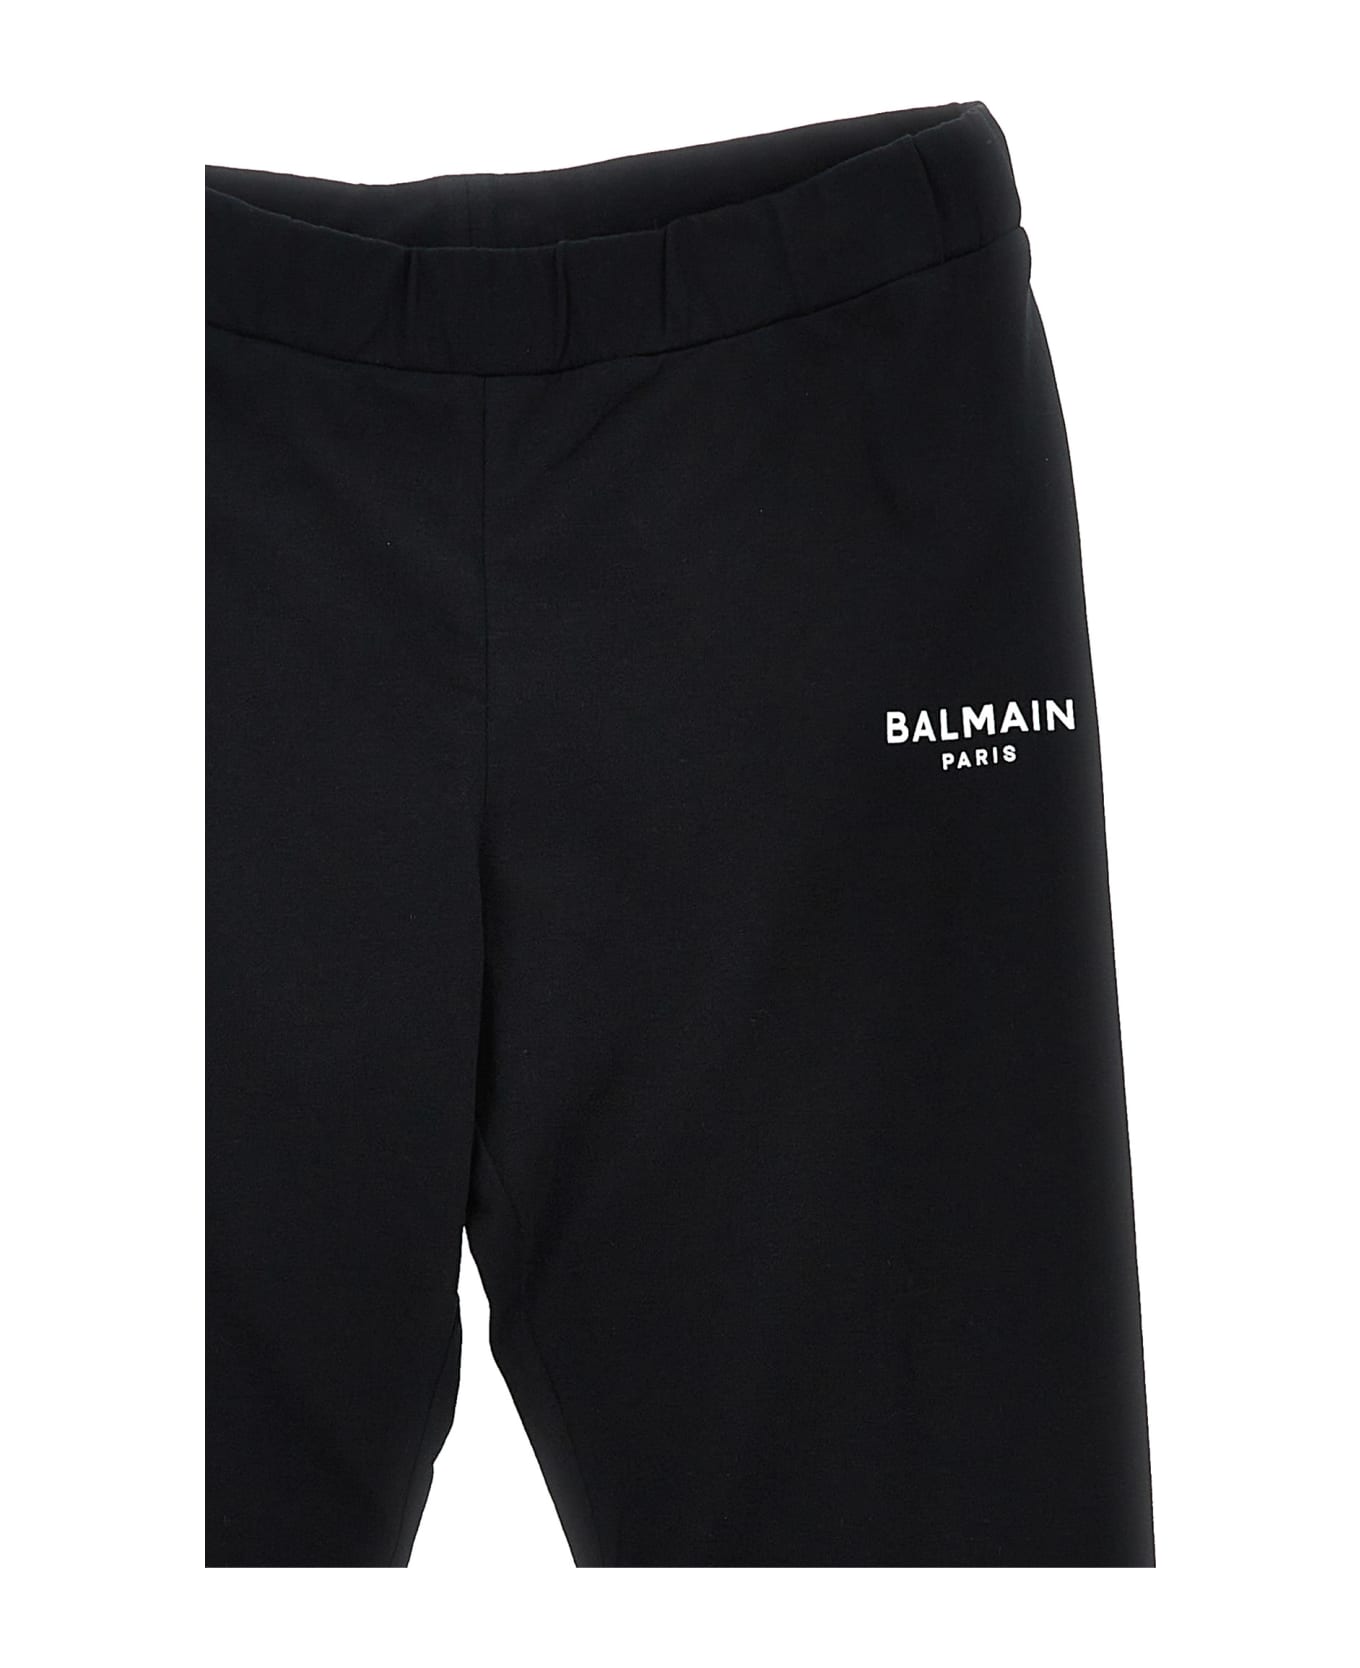 Balmain Logo Print Leggings - BLACK